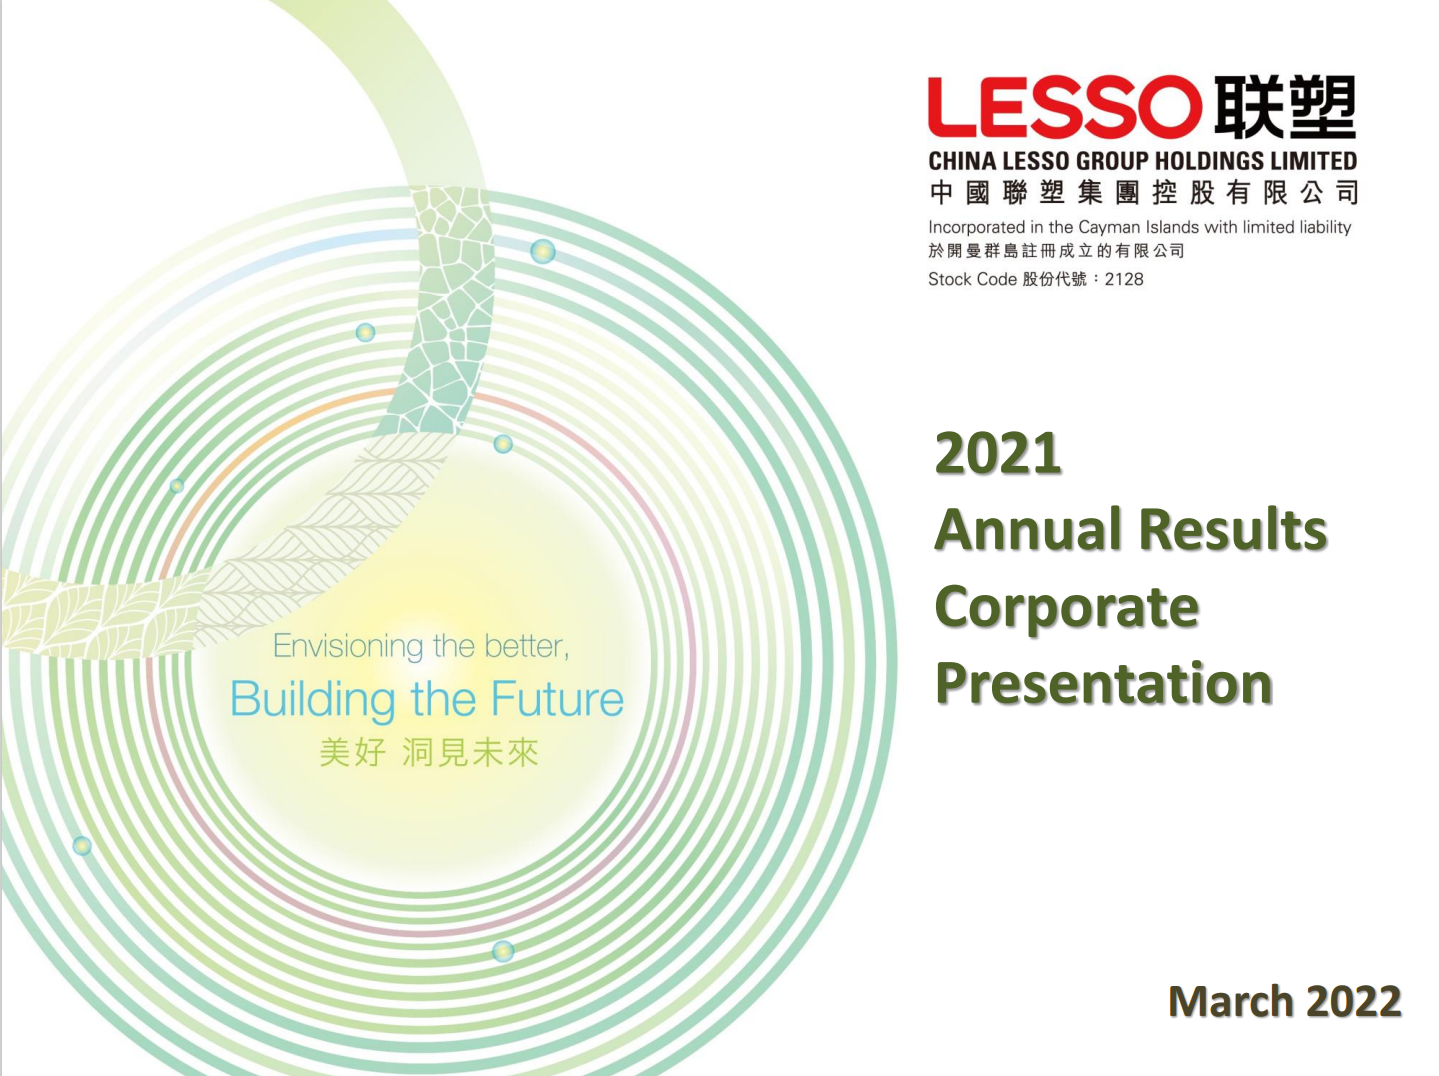 2021 Annual Results Corporate Presentation